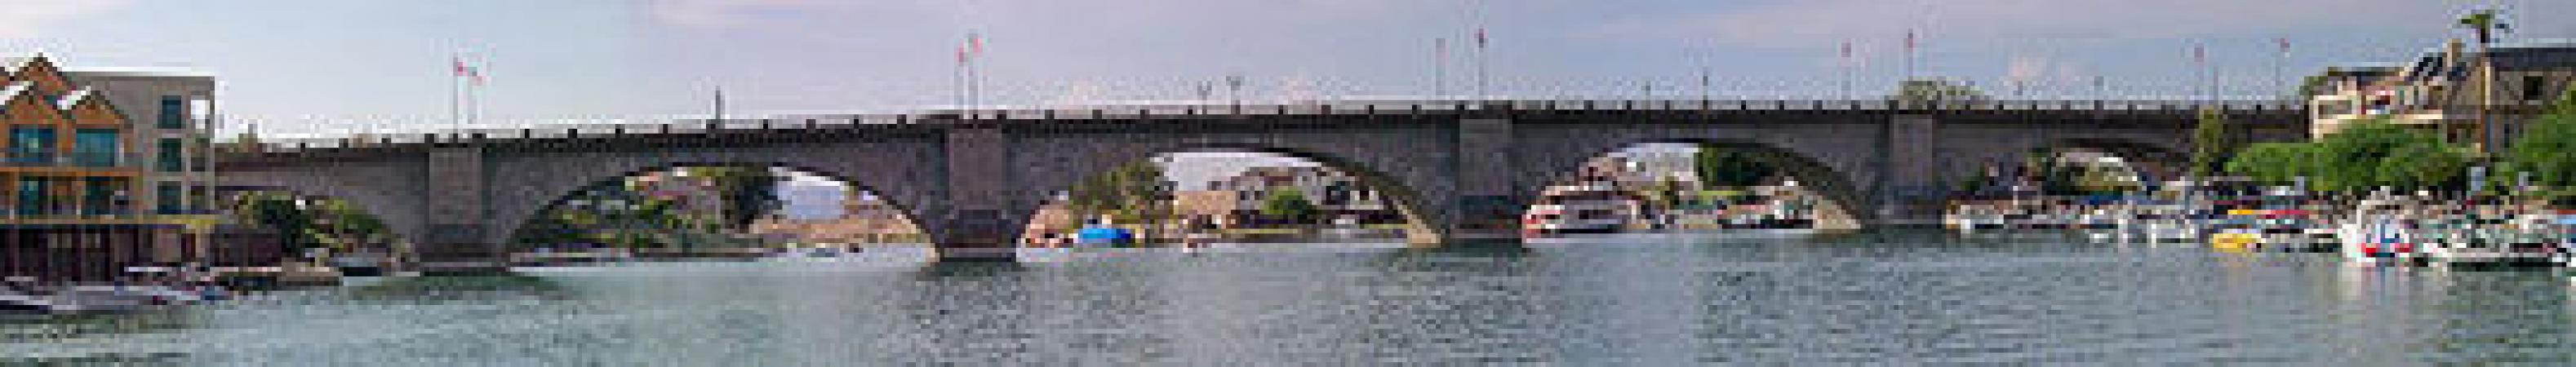 Lake Havasu London Bridge